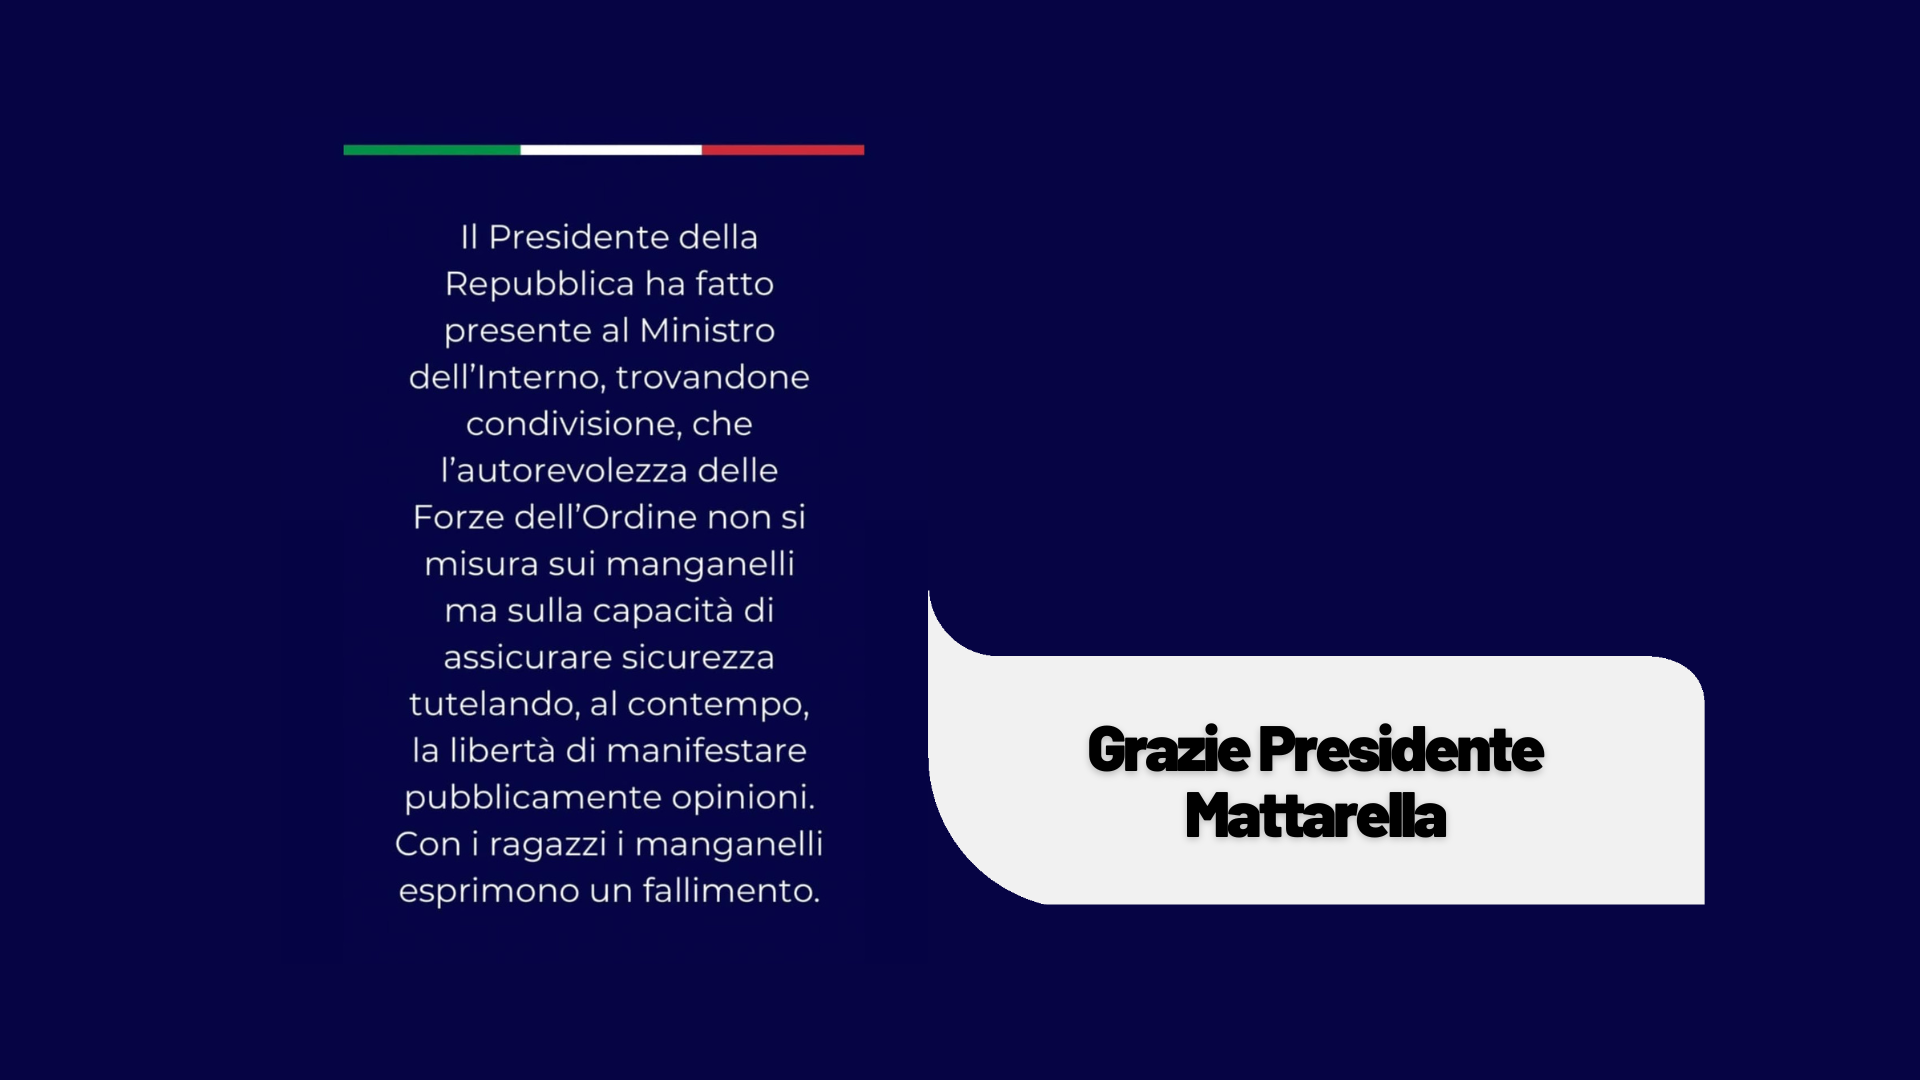 Uno Stato democratico non reprime, non censura, non manganella. Grazie Presidente Mattarella.